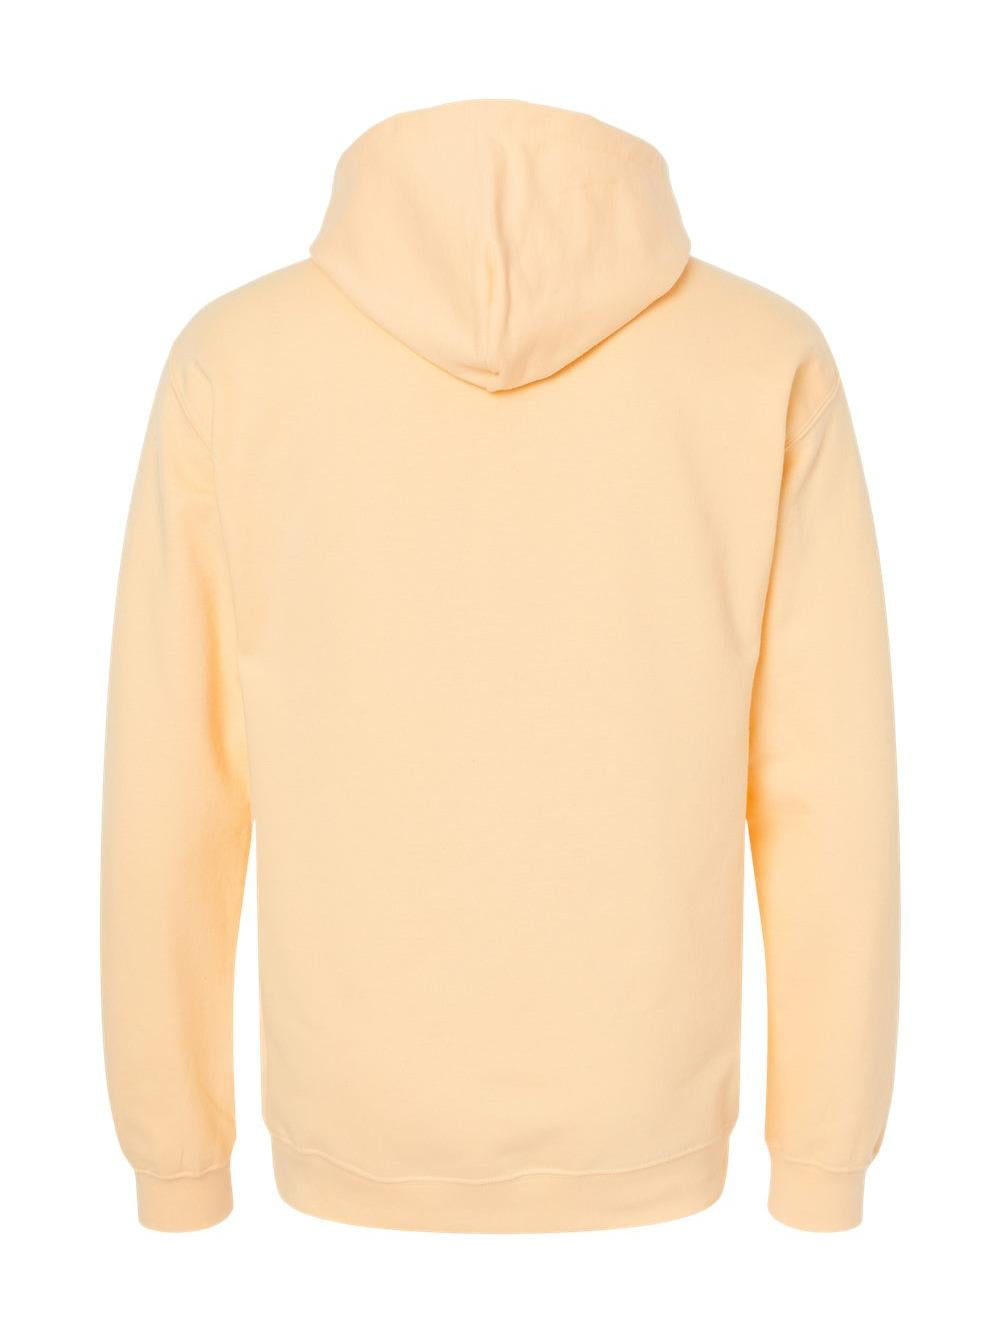 Gildan - Softstyle Hooded Sweatshirt - SF500 - Yellow Haze - Size